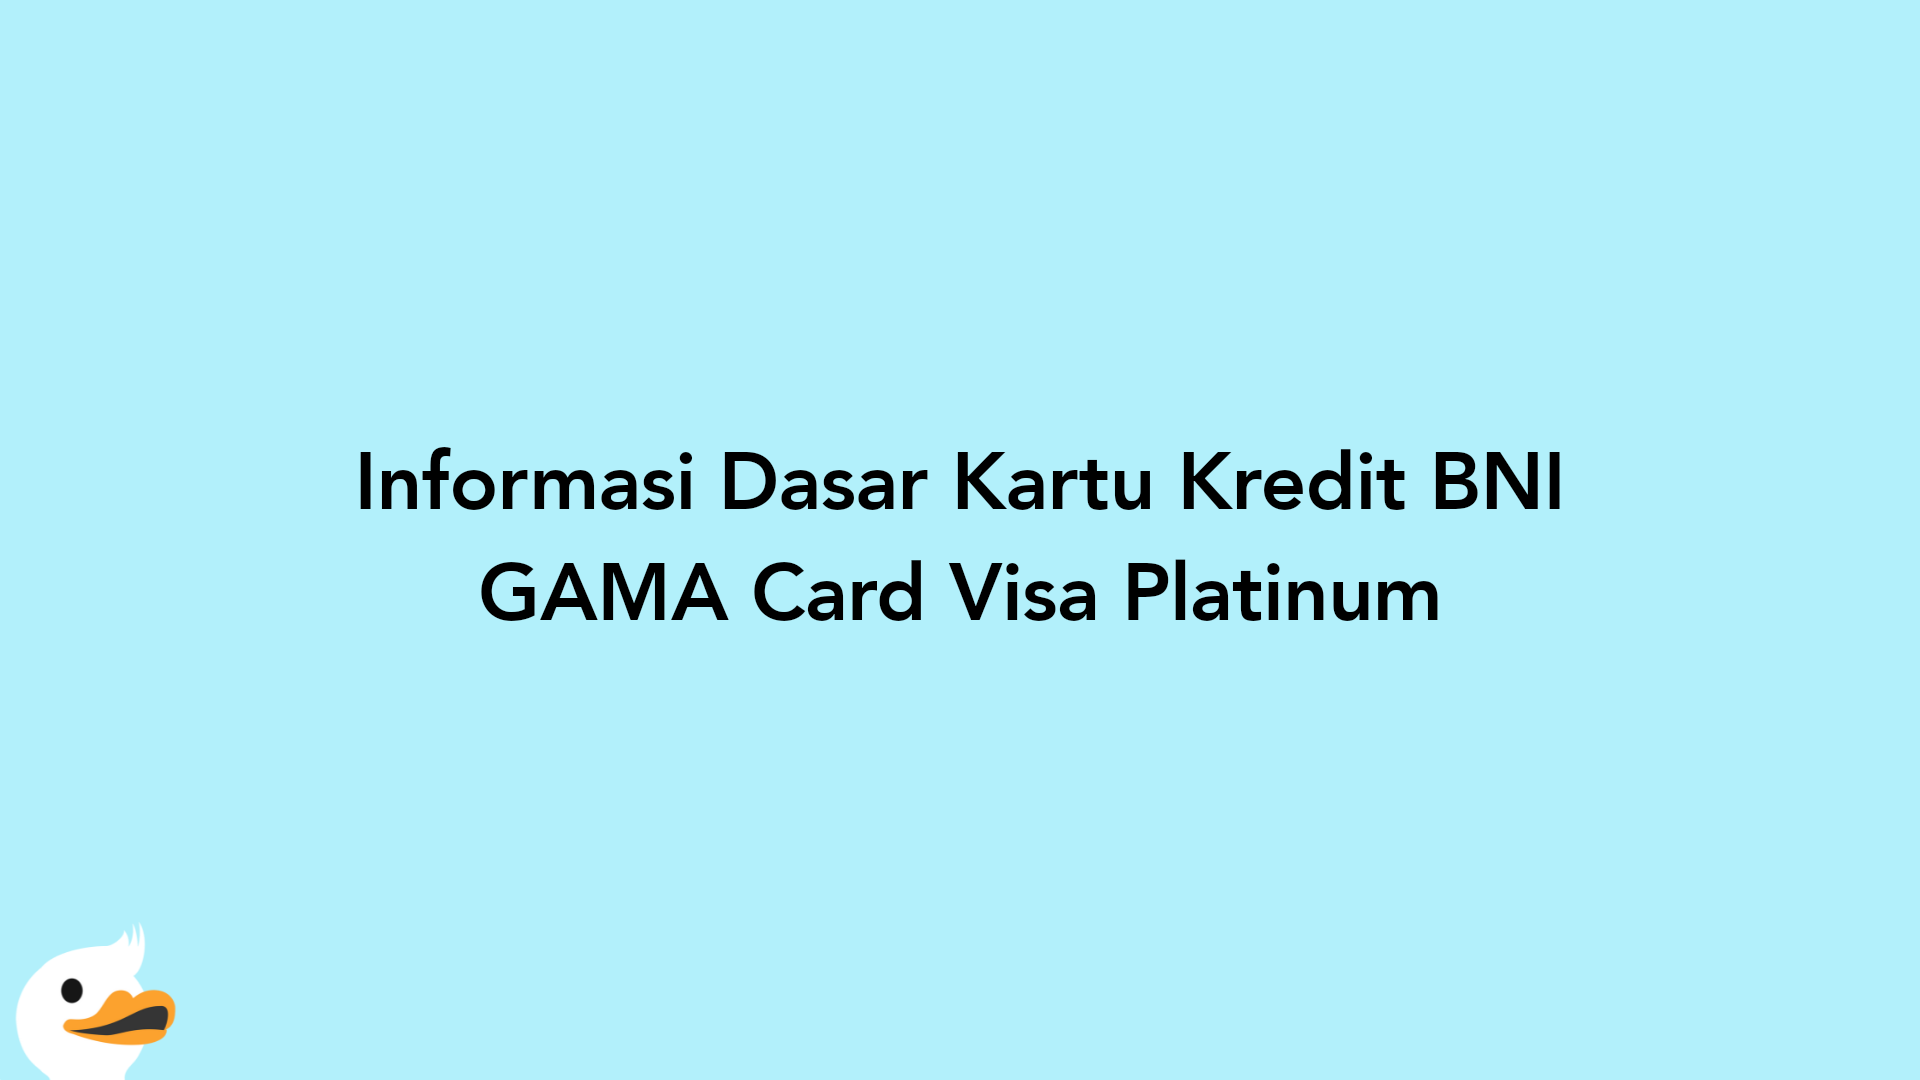 Informasi Dasar Kartu Kredit BNI GAMA Card Visa Platinum